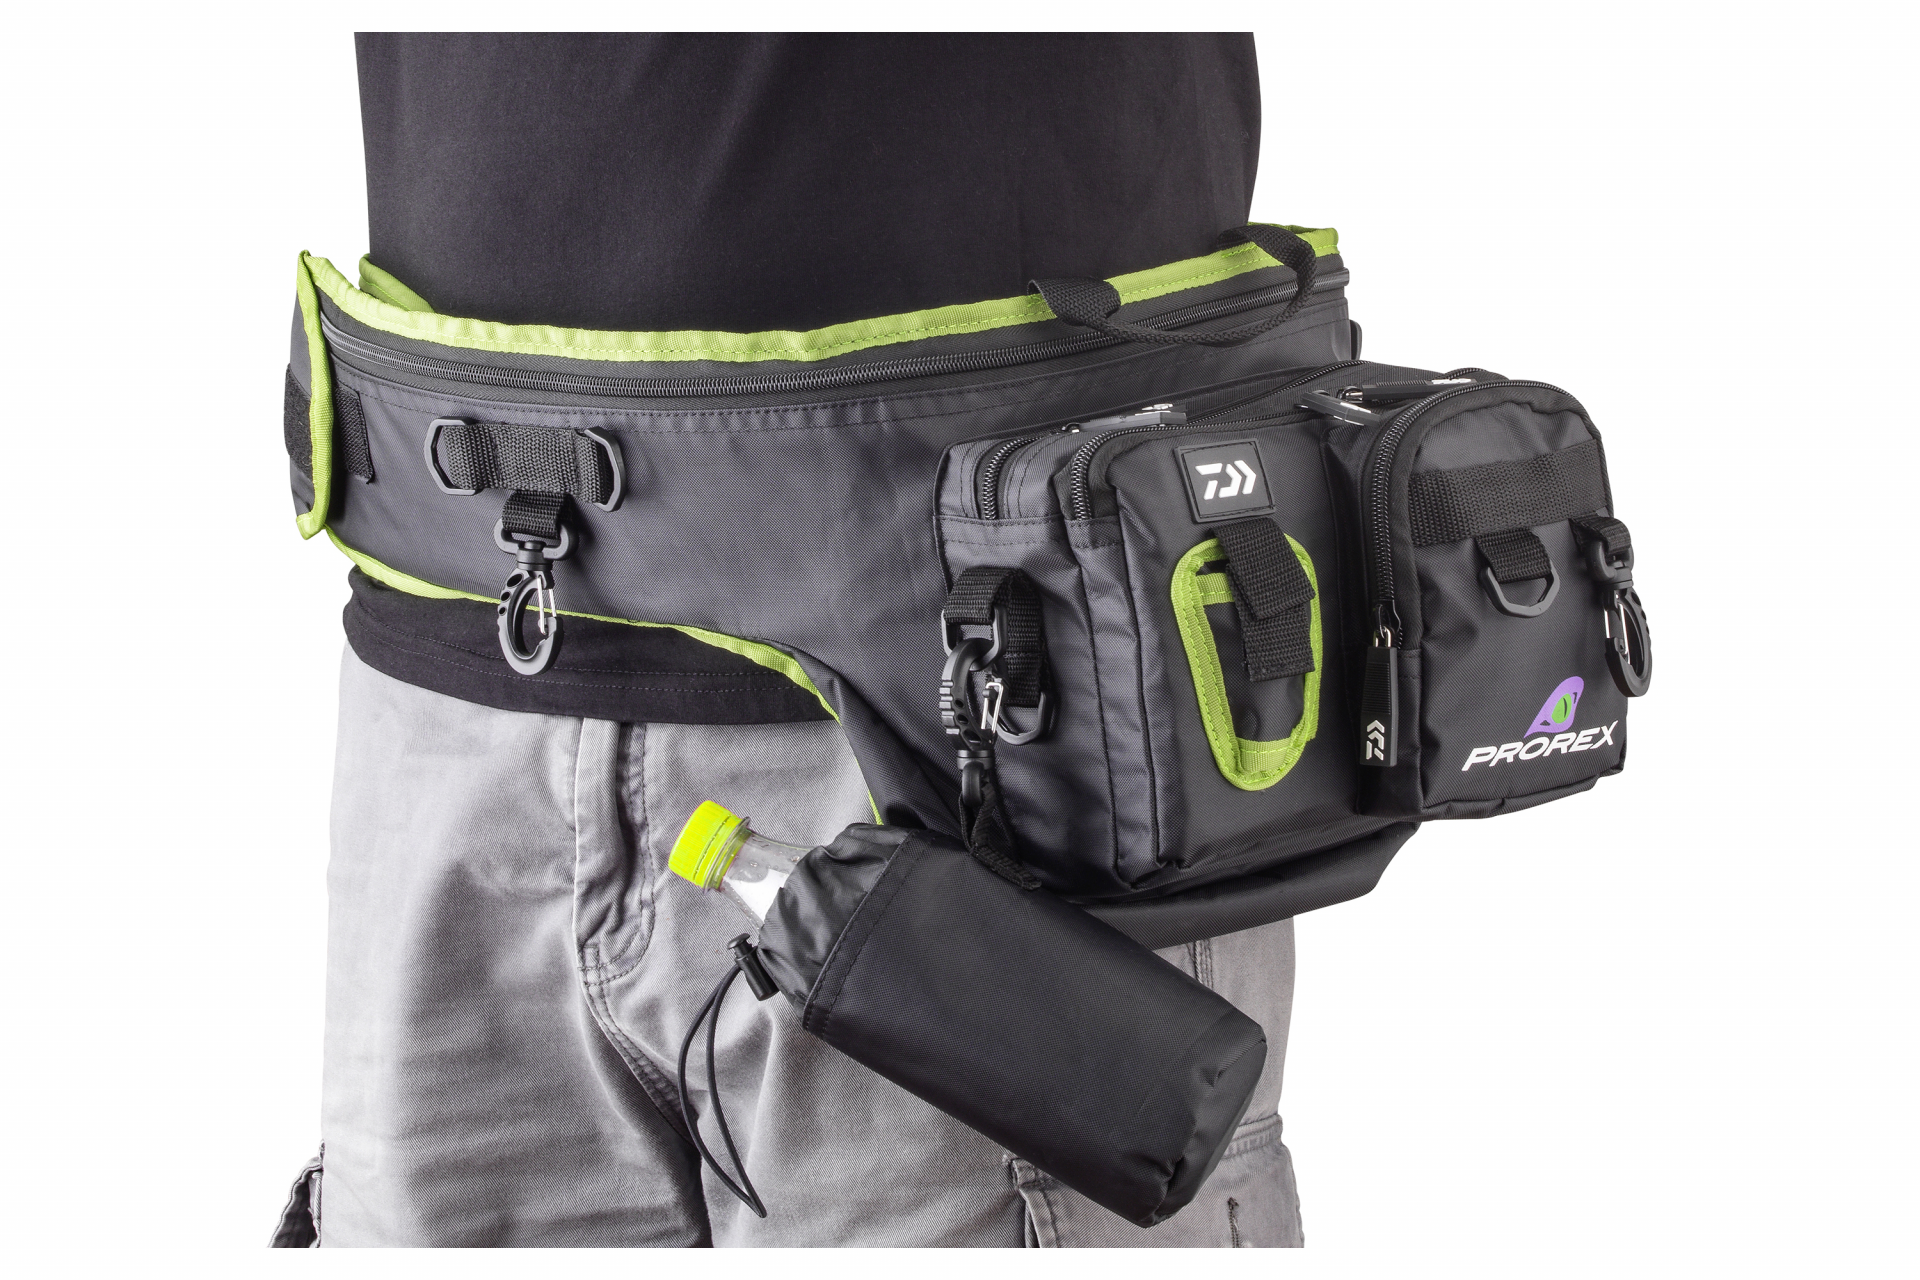 Prorex Converter Stalker Rod & Hip Bag <span>| Specjalistyczny pokrowiec na wędkę | na 1 uzbrojoną wędkę</span>